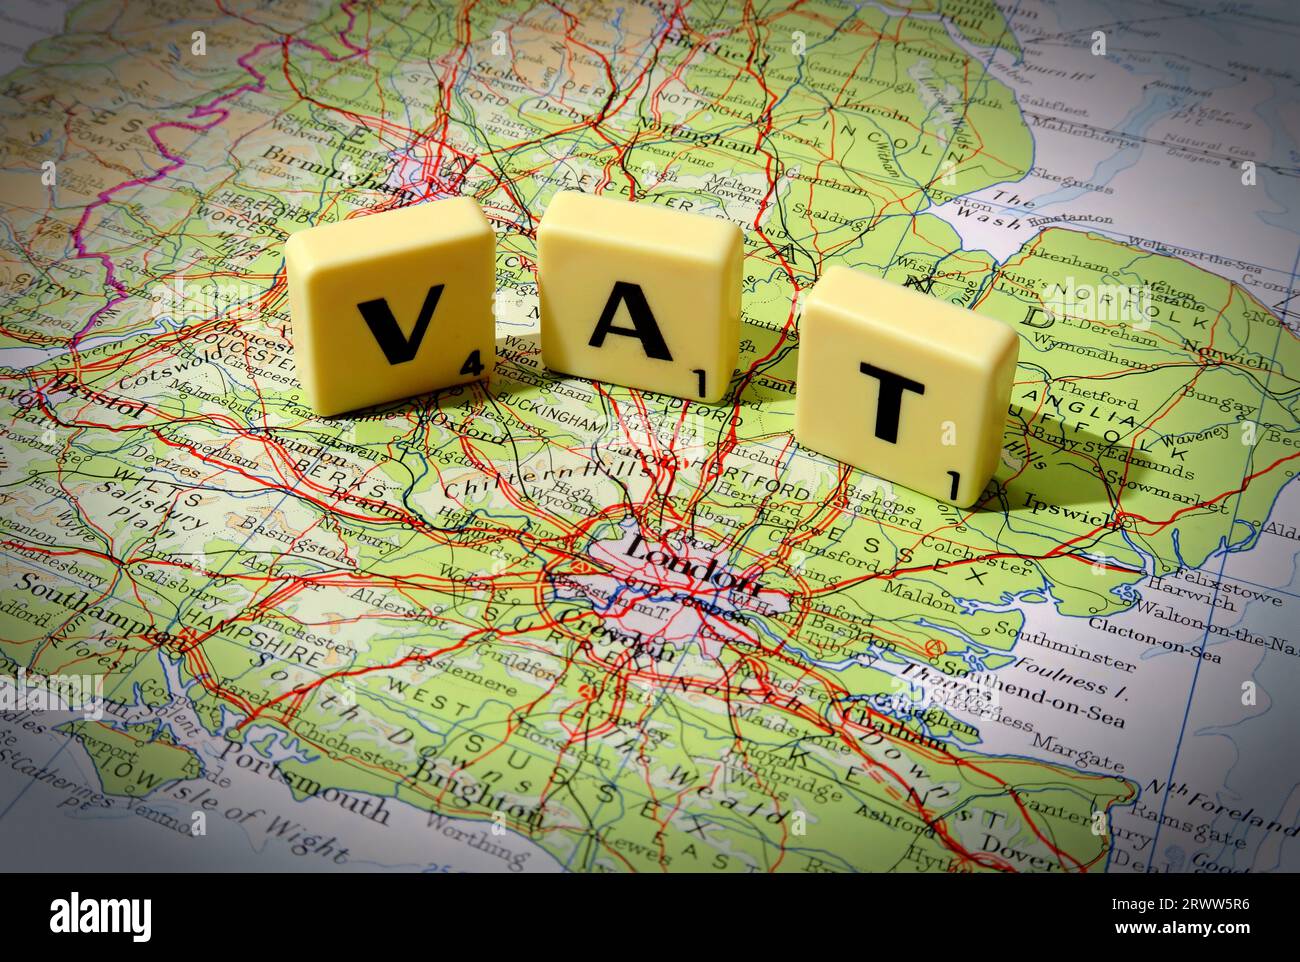 MwSt die Umsatzsteuer für den Kauf, die in Scrabble-Buchstaben auf einer Karte von England, Großbritannien, Großbritannien angegeben ist Stockfoto